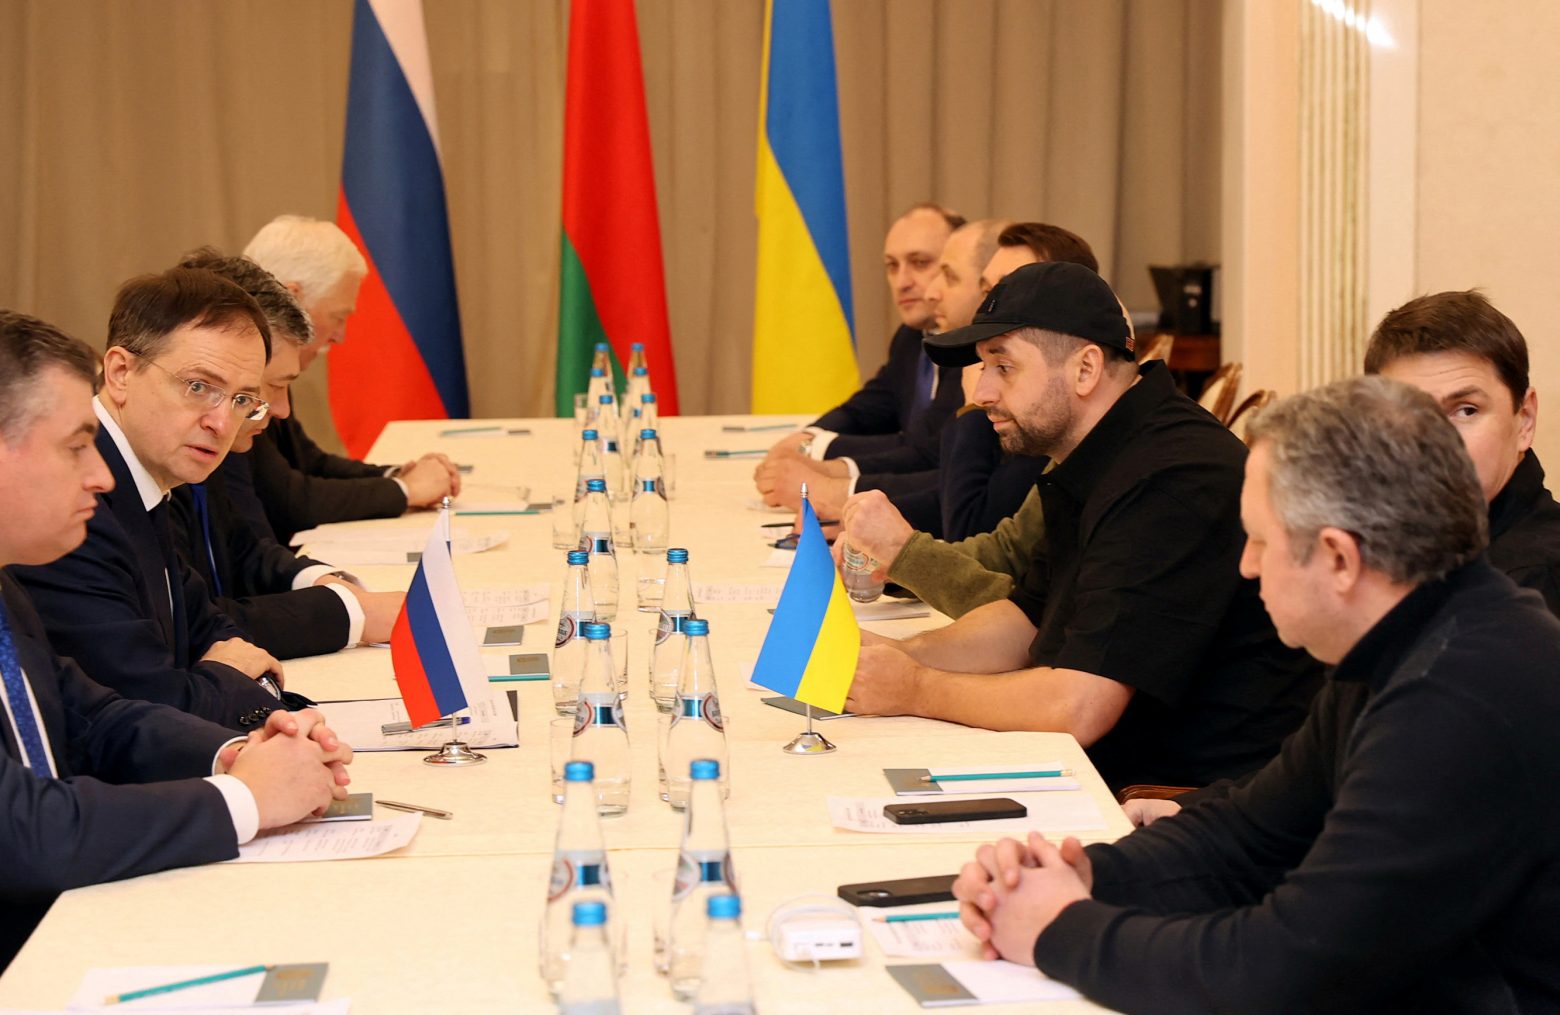 Πόλεμος στην Ουκρανία: Θρίλερ με τις διαπραγματεύσεις Κιέβου με τη Μόσχα - Συνεχίζονται μετά το διάλειμμα